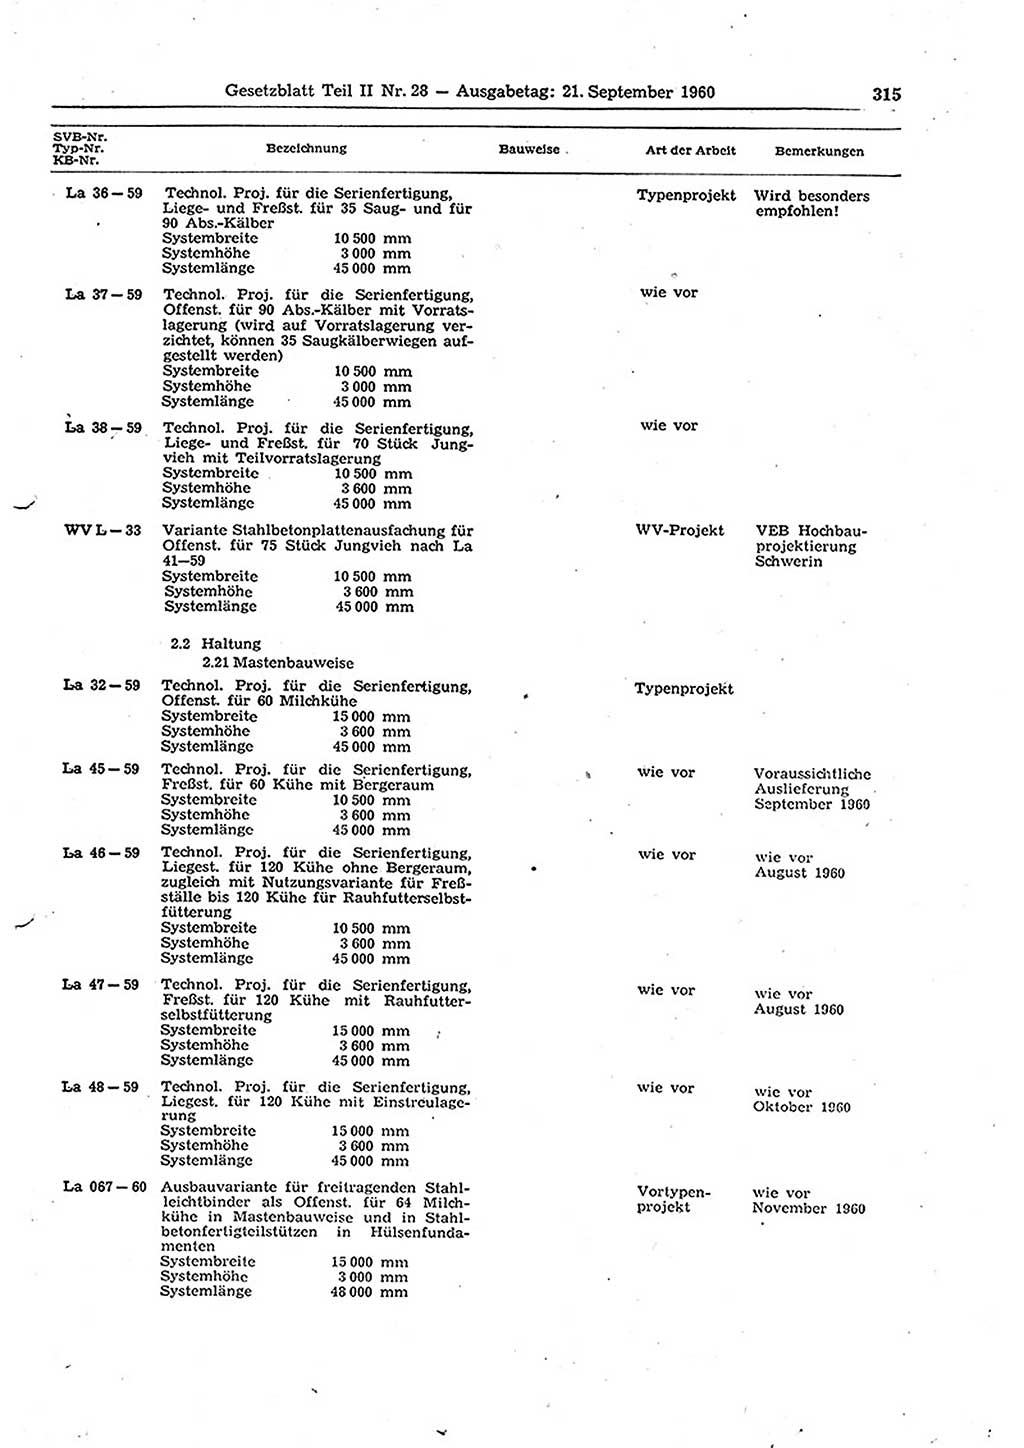 Gesetzblatt (GBl.) der Deutschen Demokratischen Republik (DDR) Teil ⅠⅠ 1960, Seite 315 (GBl. DDR ⅠⅠ 1960, S. 315)